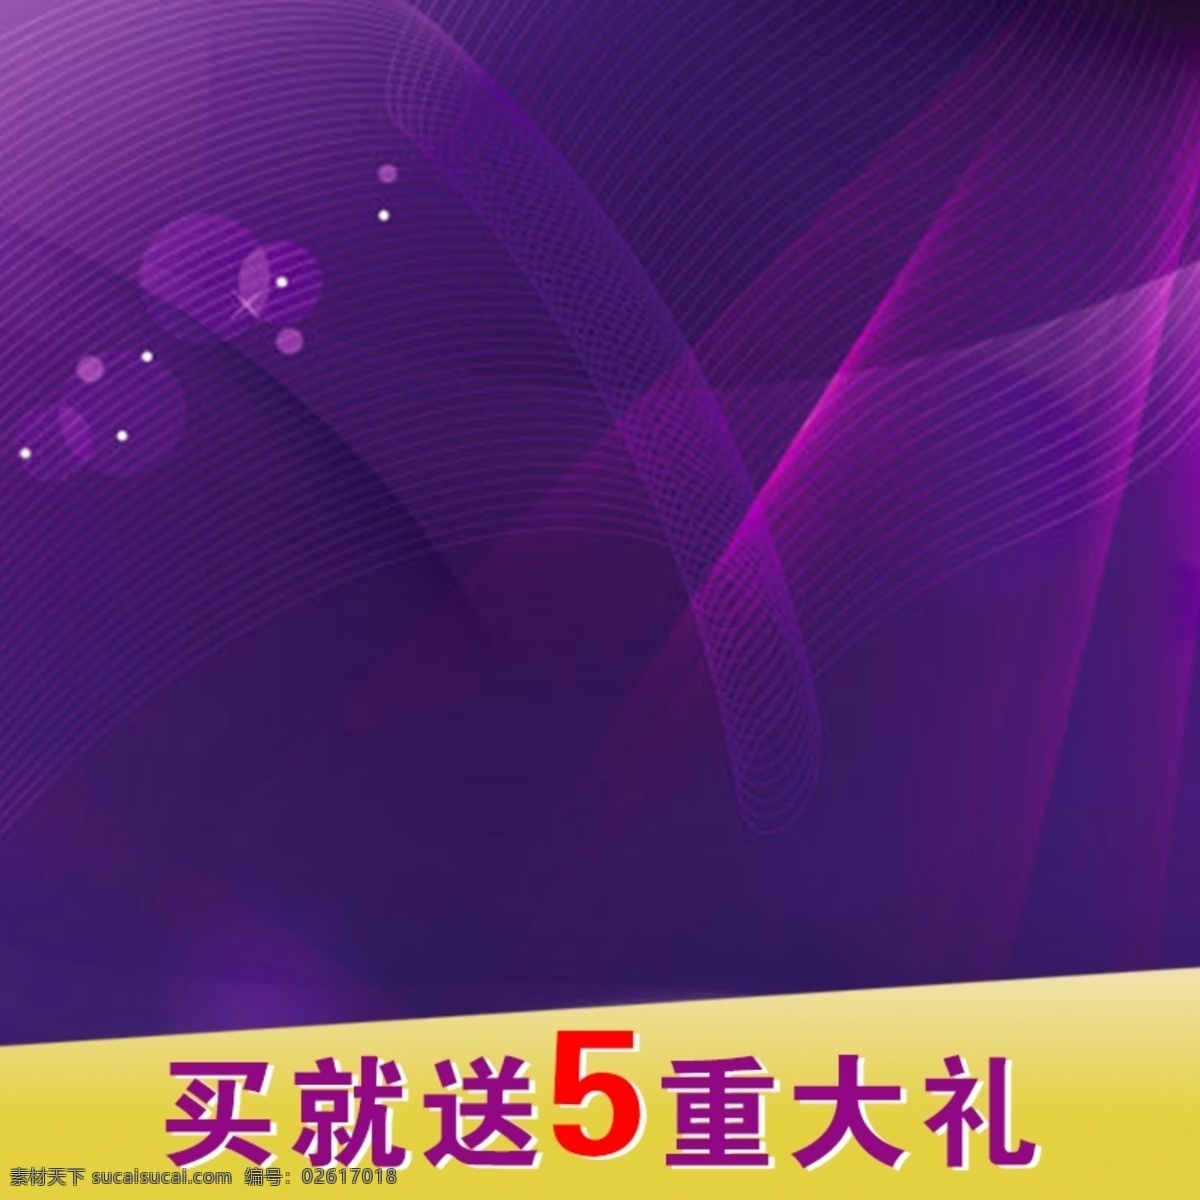 数码商务模板 数码 商务 节日 促销 紫色 蓝色